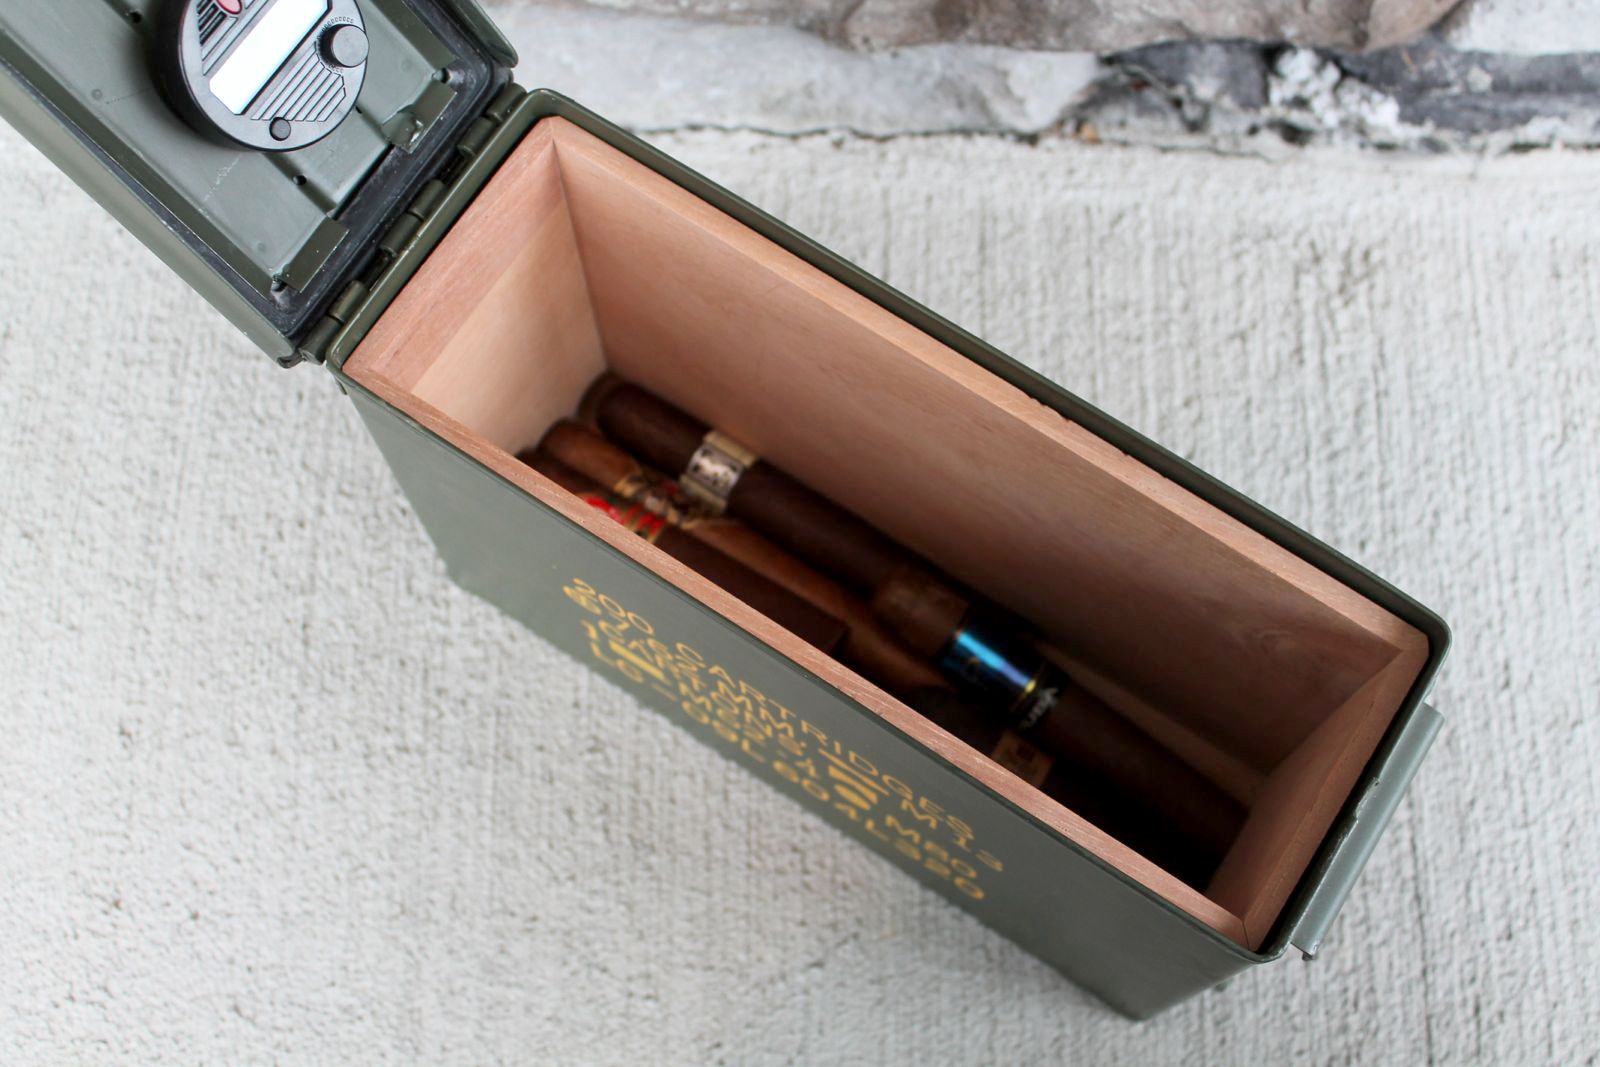 The 30 Ammo Can Cigar Humidor